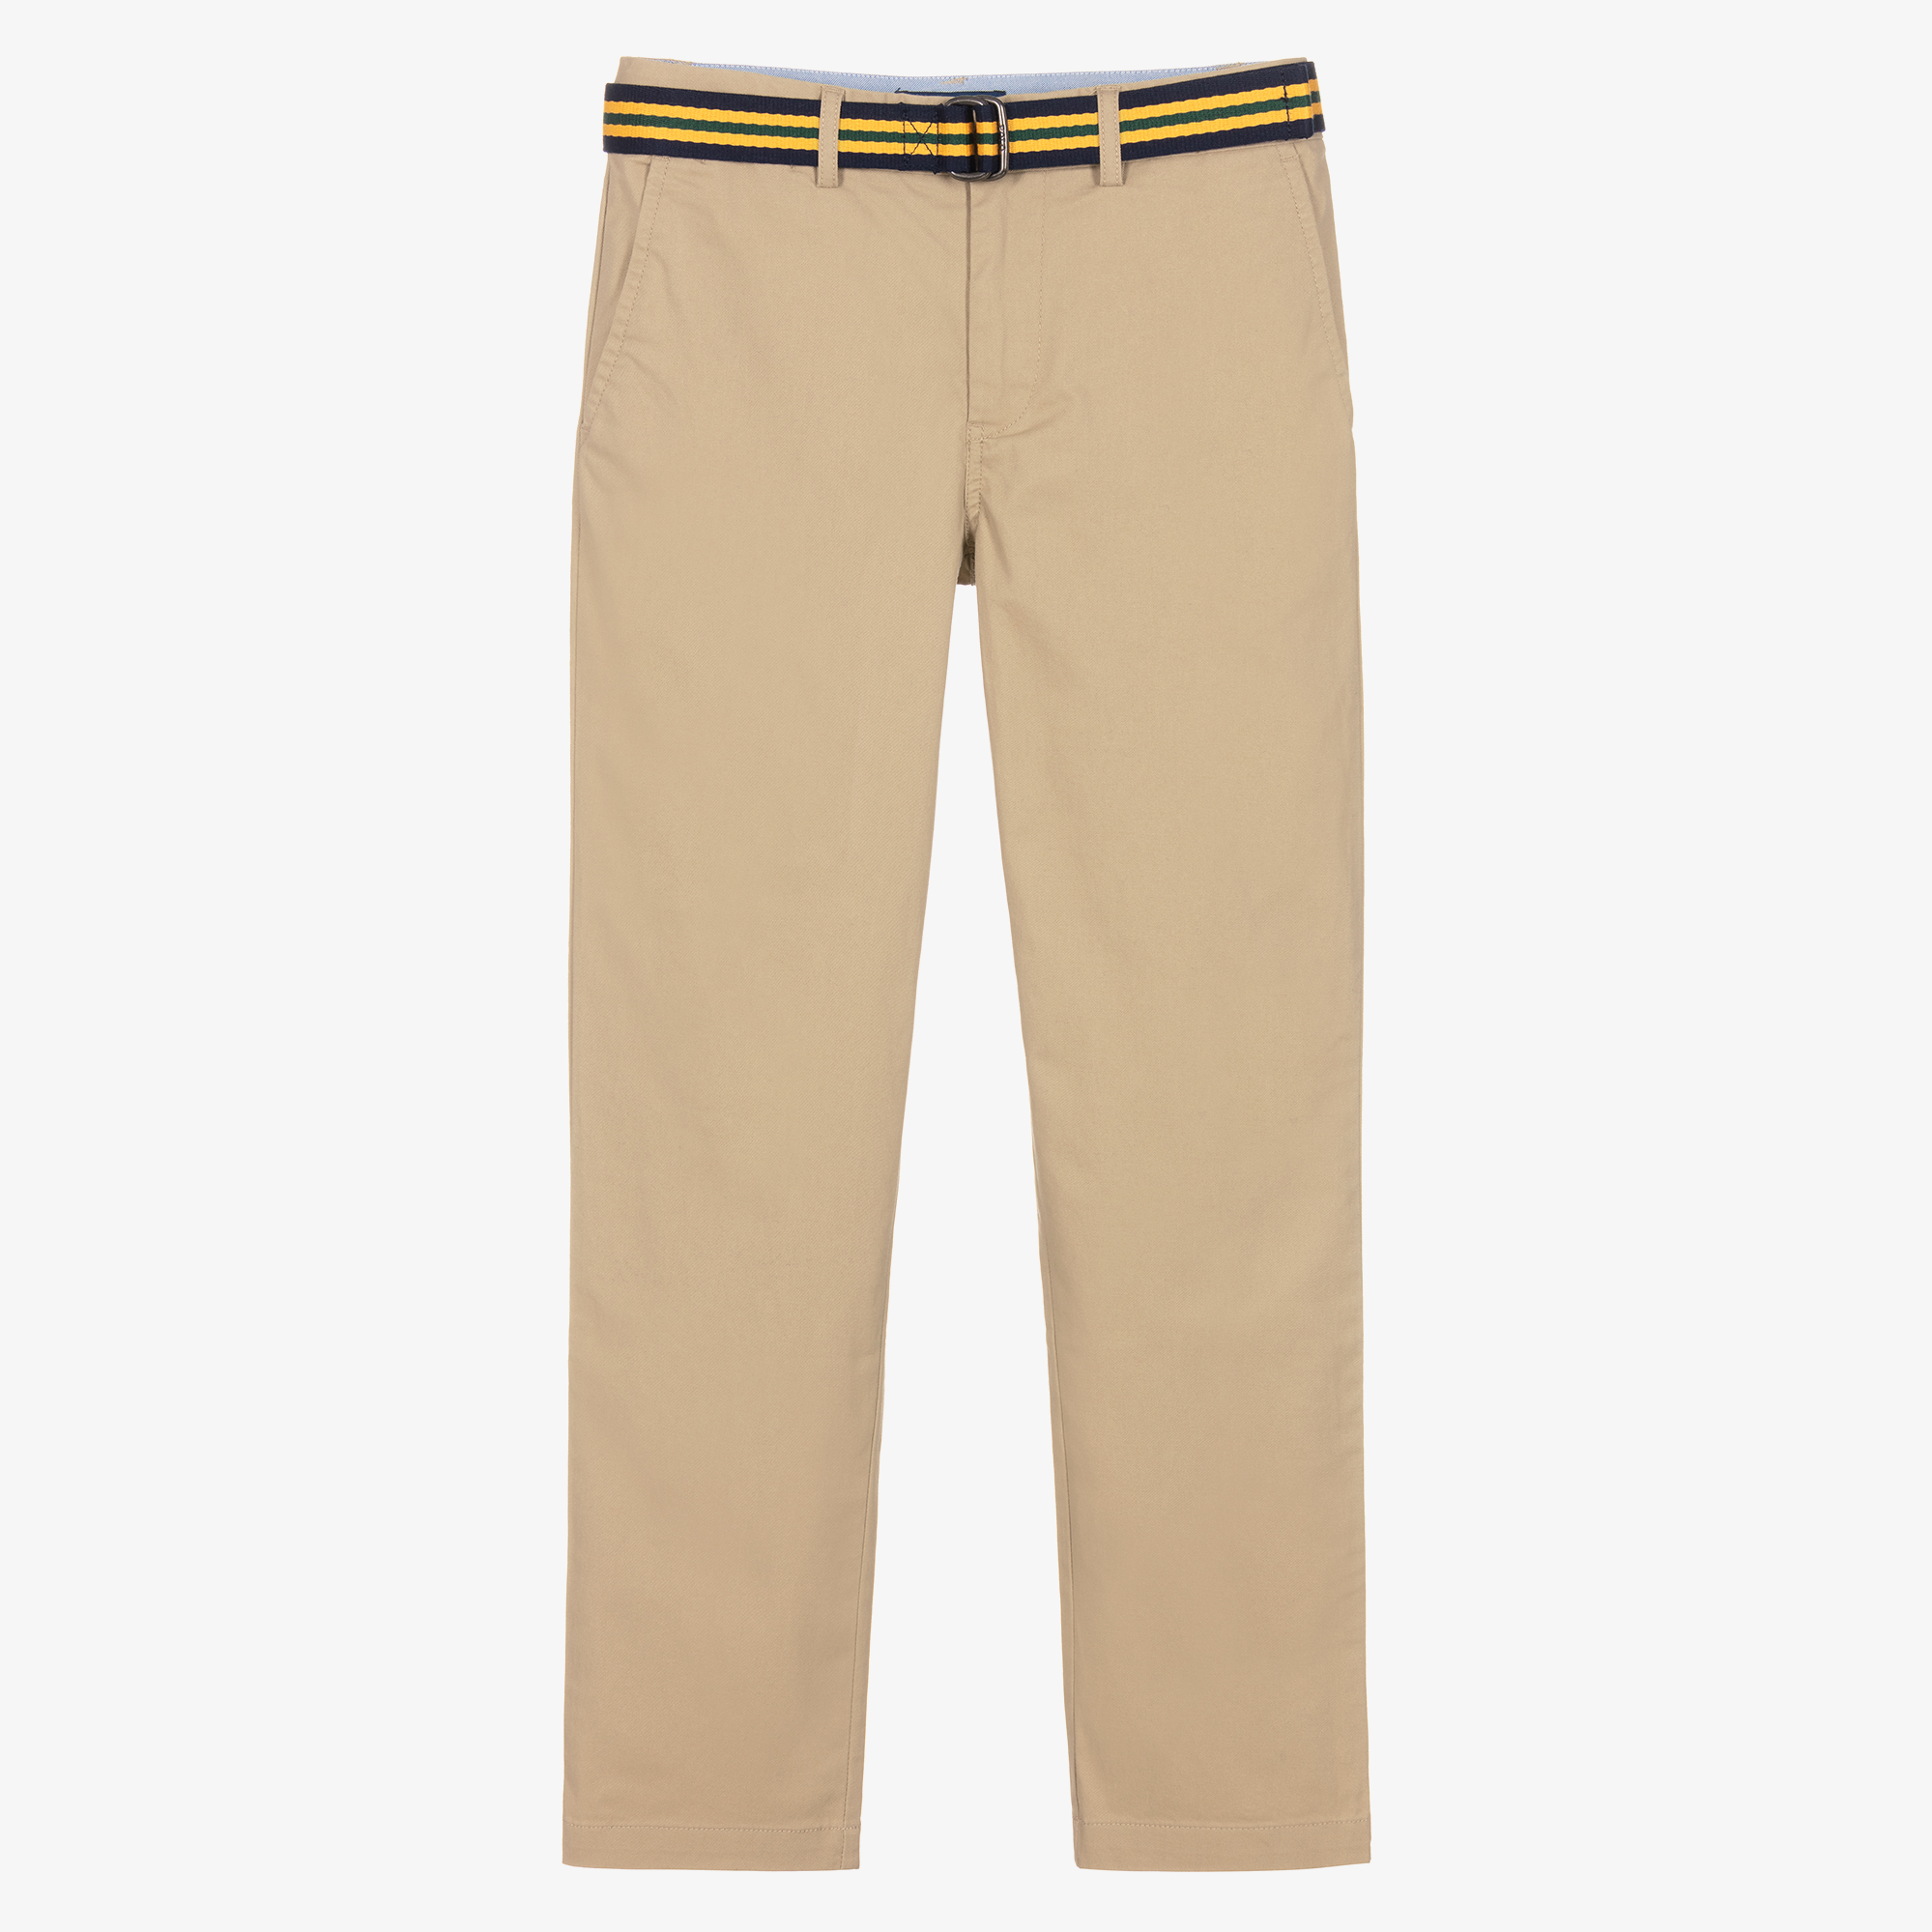 https://cdn.childrensalon.com/media/catalog/product/r/a/ralph-lauren-teen-boys-beige-cotton-twill-chino-trousers-519766-8f621faa83a49c733c515d31d27b434e832e1ee5.jpg